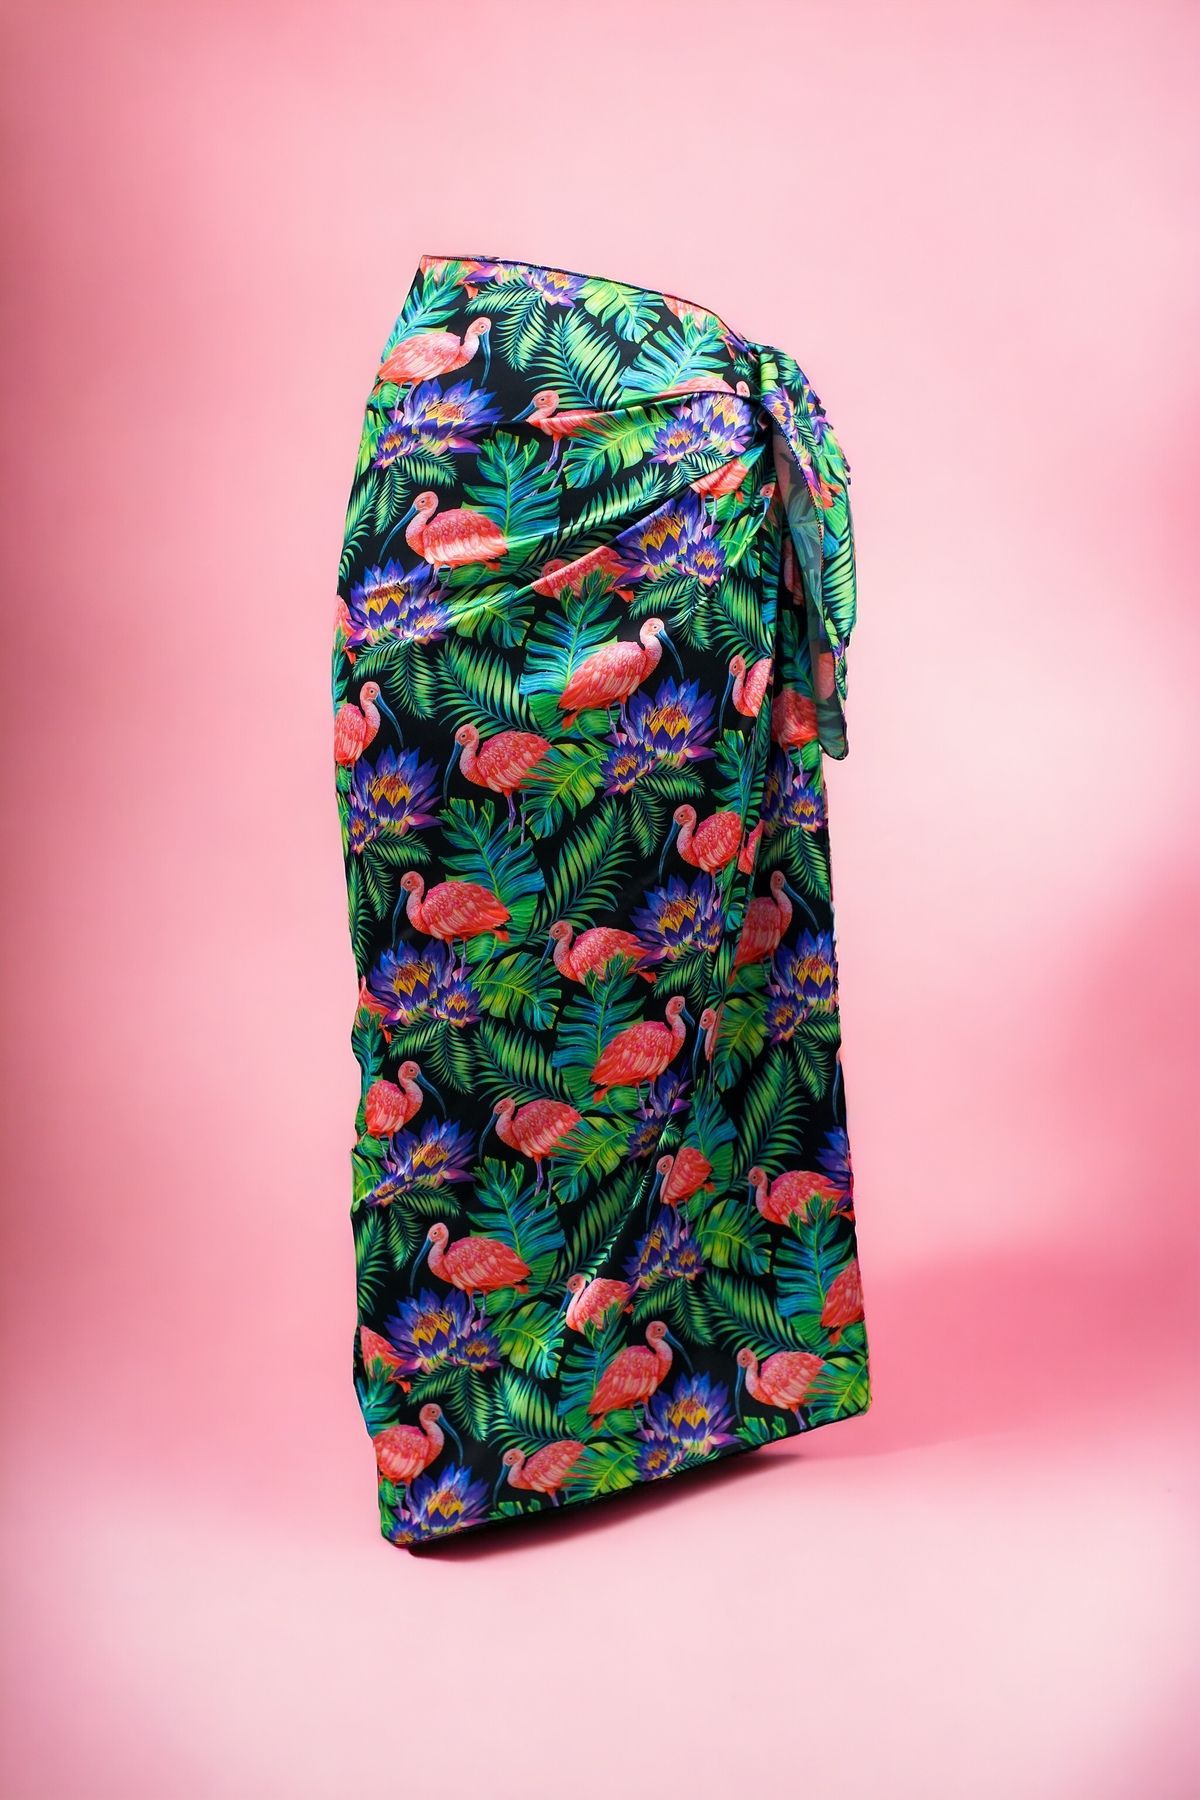 pistore Monstera ve Flamingo Desenli Uzun Pareo Saten Kadın Plaj Elbisesi Yeni Sezon